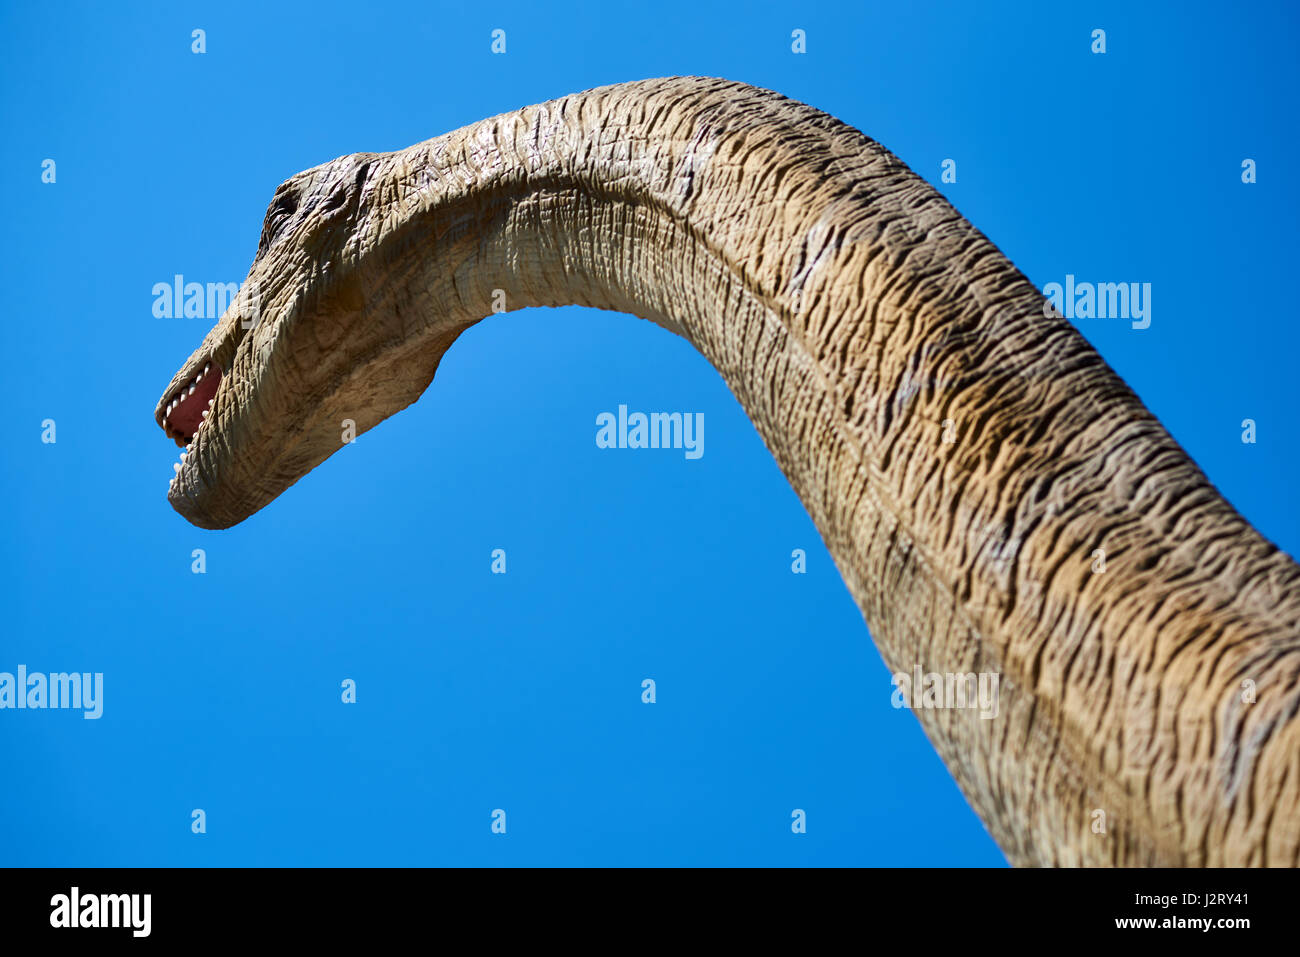 Algar, Spanien - 8. April 2017: Realistisches Modell eines Dinosauriers Diplodocus vor blauem Himmelshintergrund. DinoPark Algar ist eine einzigartige Unterhaltung und educa Stockfoto